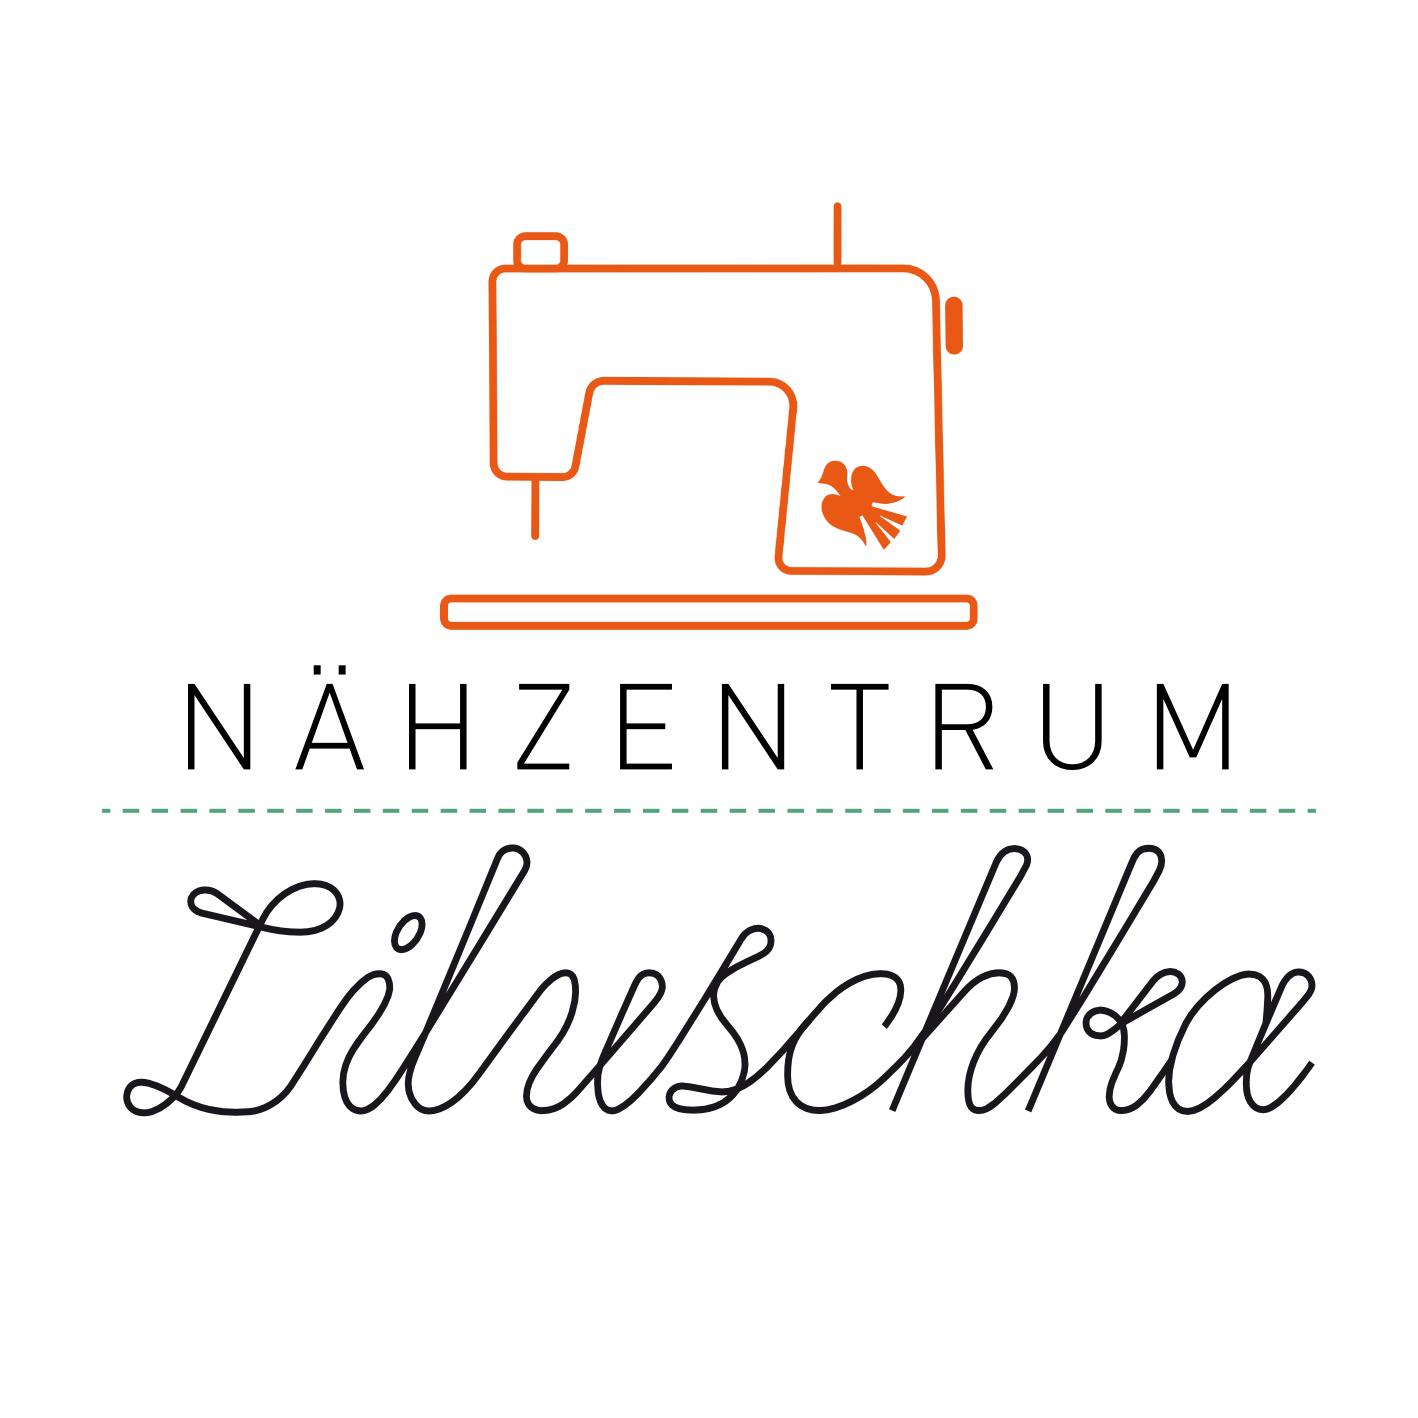 Nähzentrum Liluschka in Mettmann - Logo